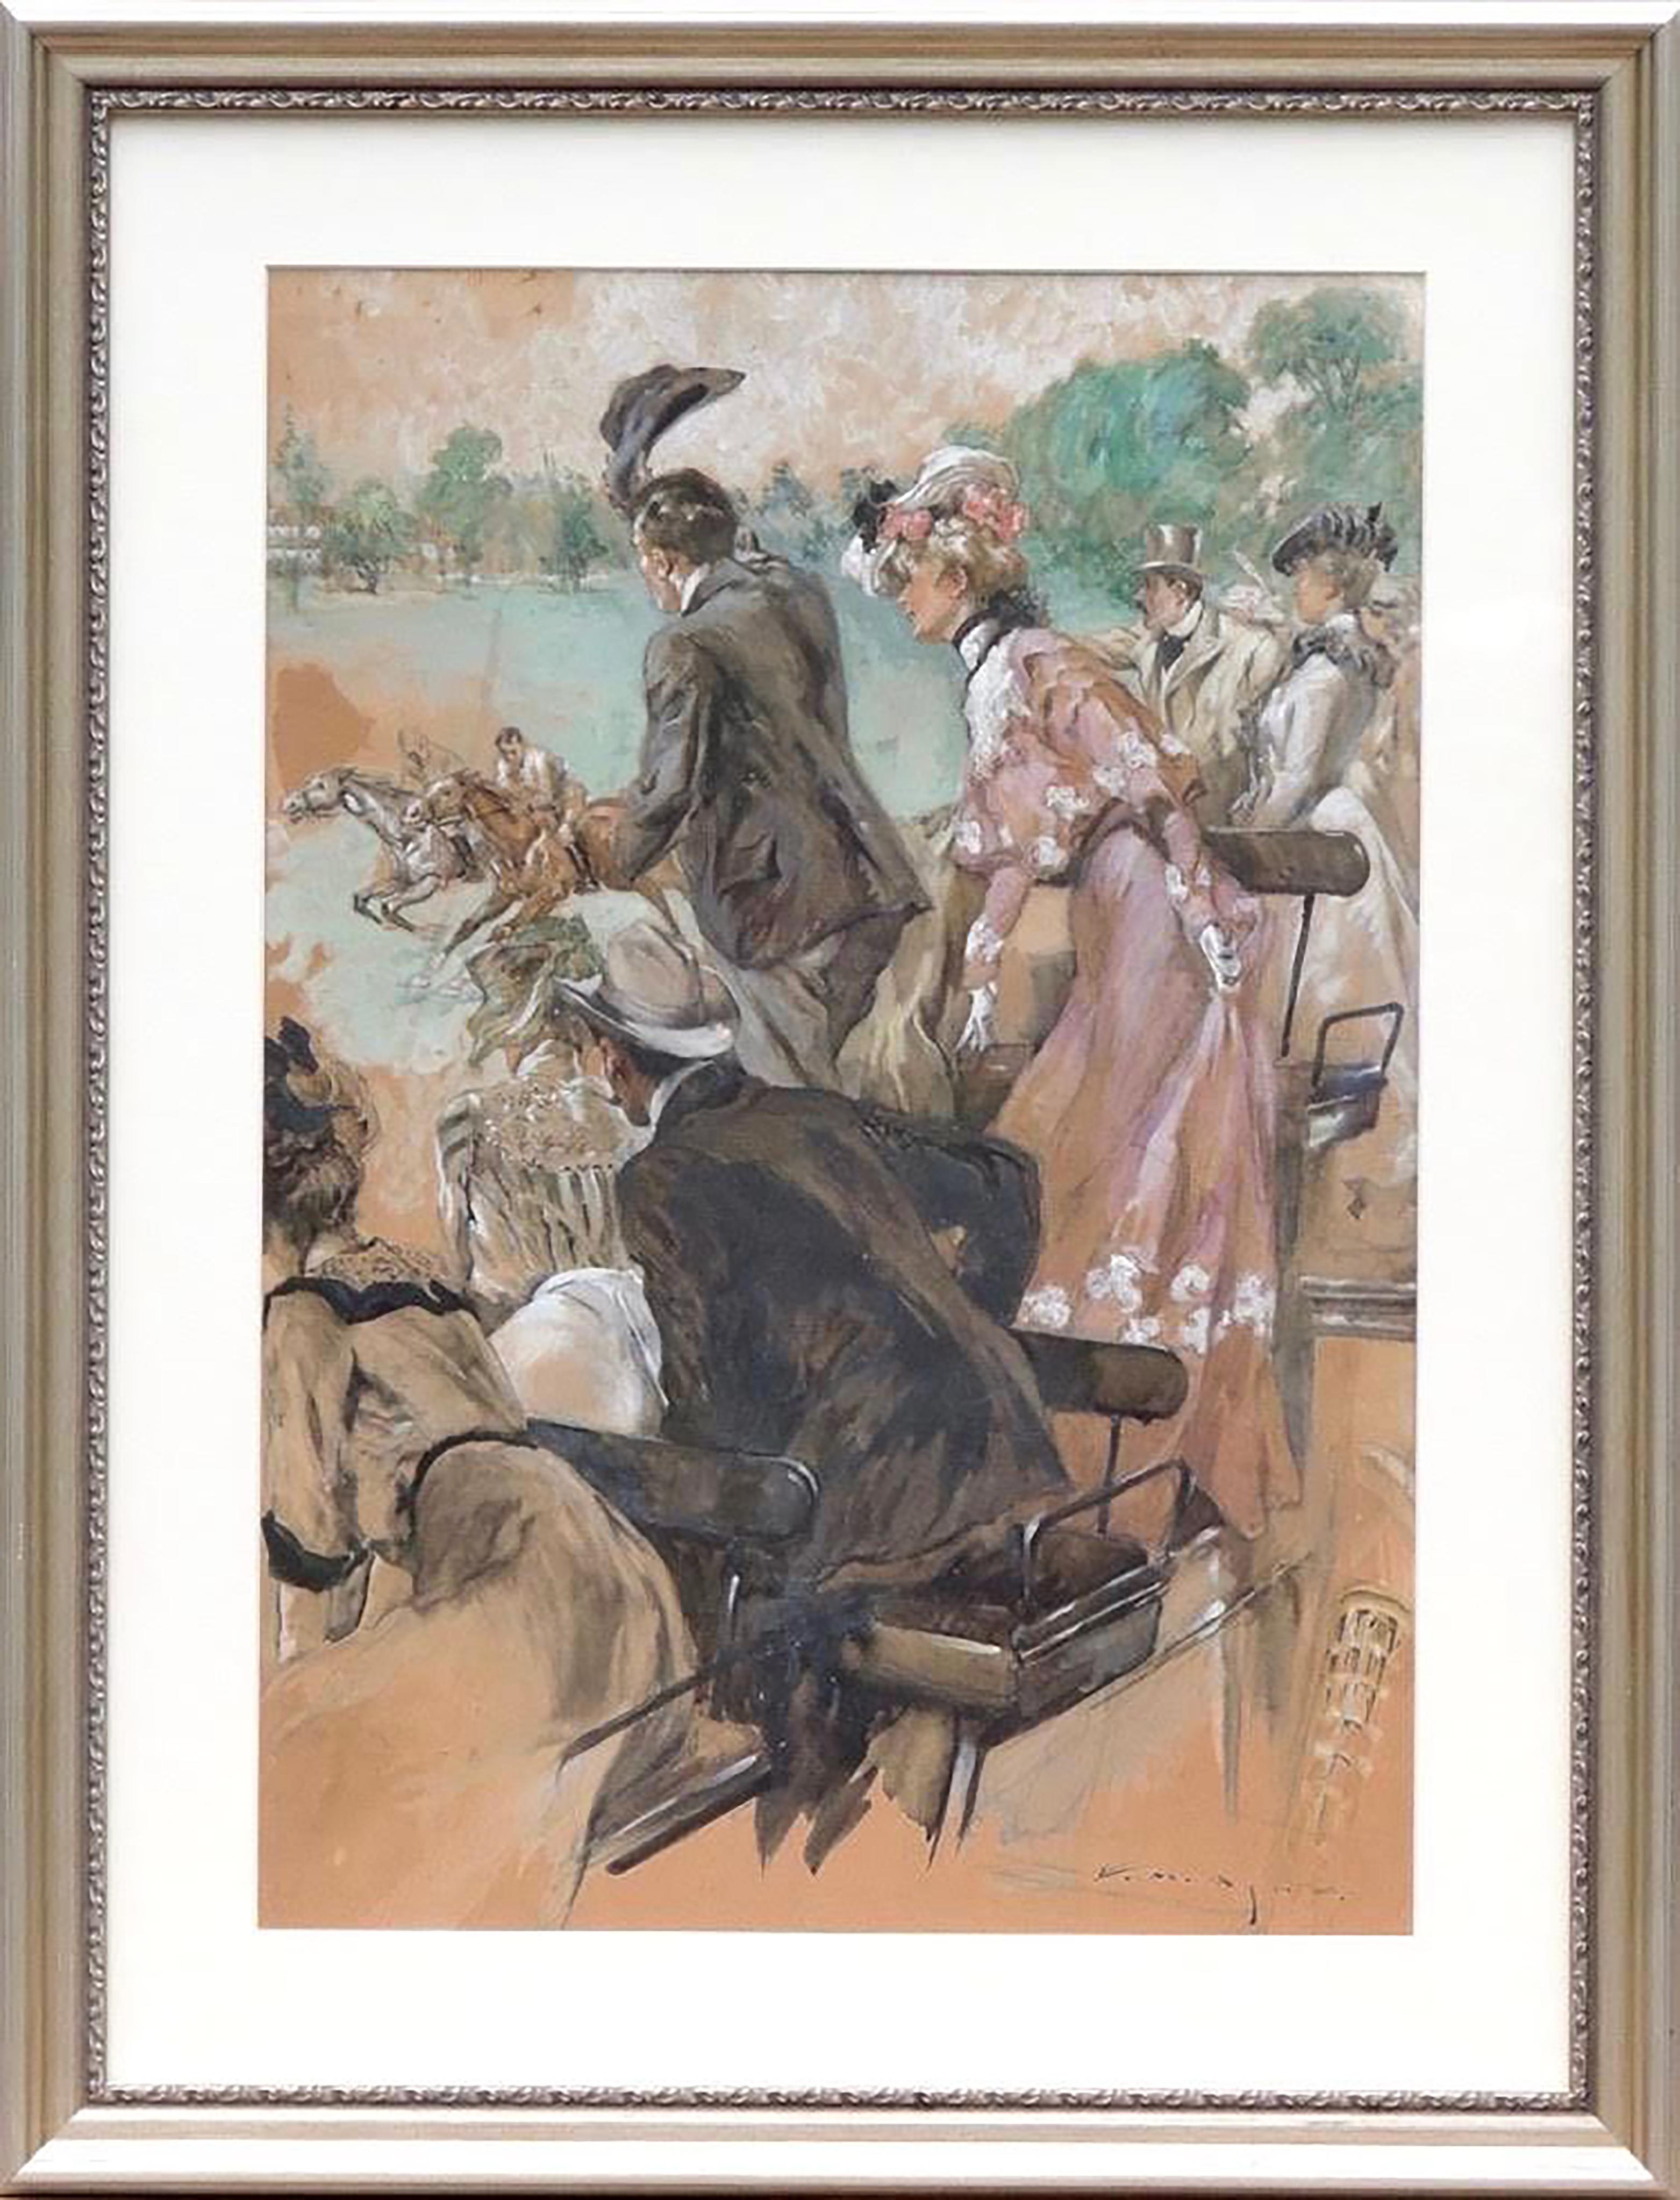 Pferdesportrennen – Painting von E. M. Ashe